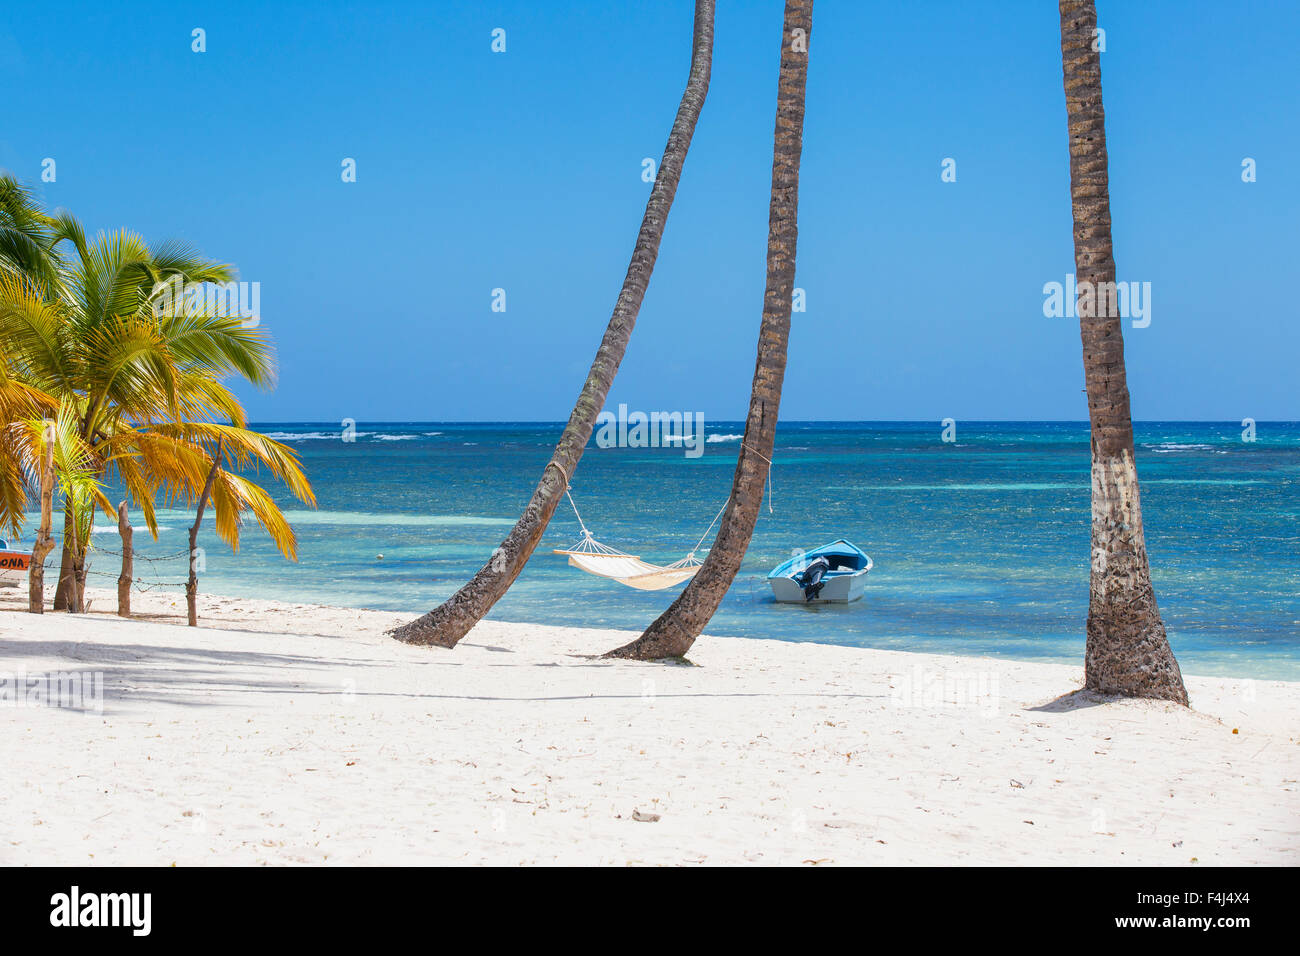 Mano Juan, un pittoresco villaggio di pescatori, Saona Island, Parque Nacional del Este, Punta Cana, Repubblica Dominicana, West Indies Foto Stock